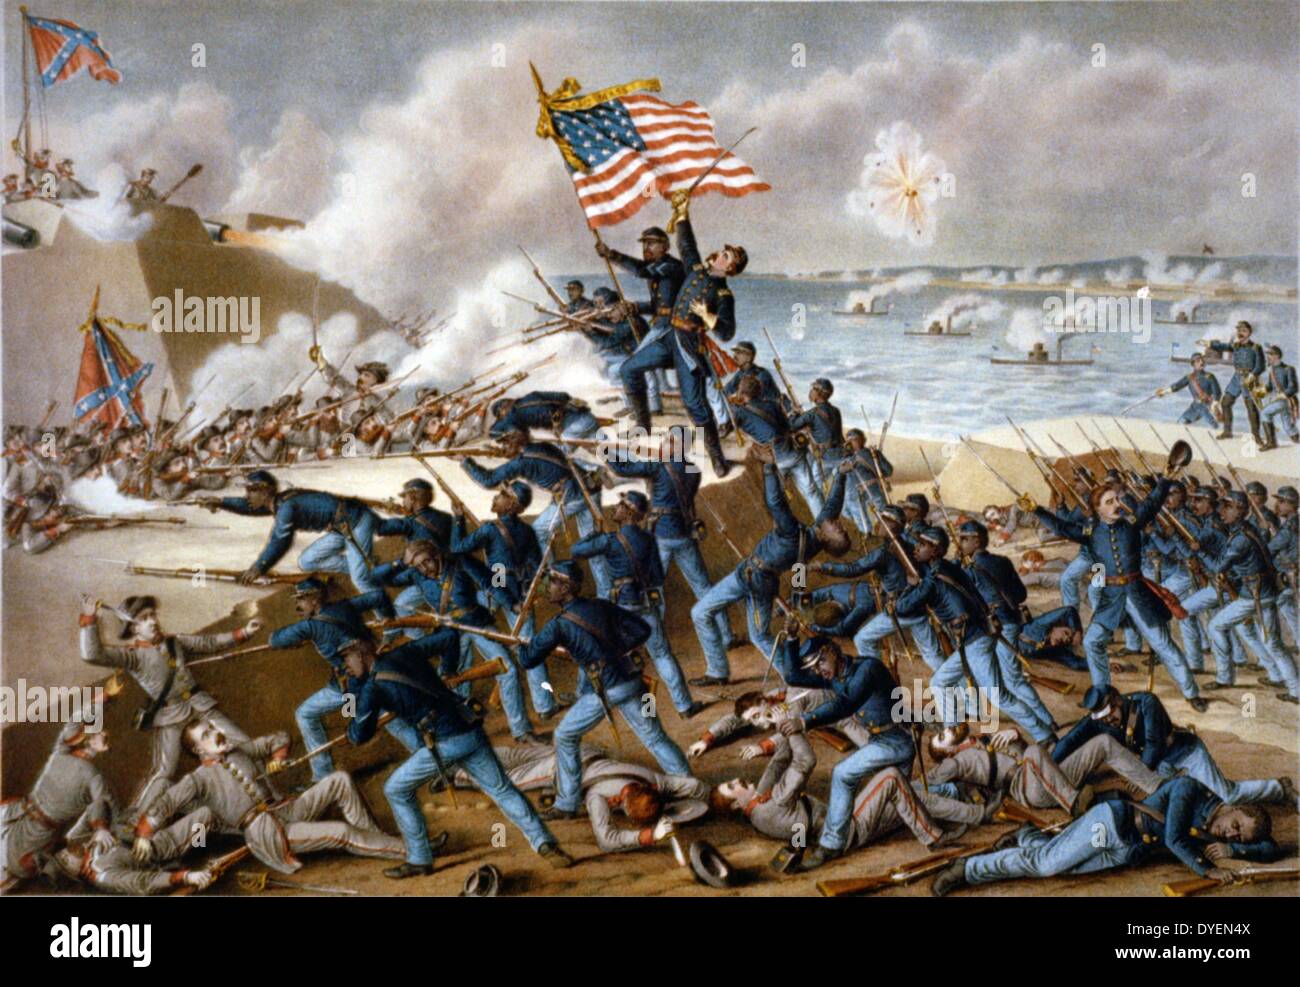 Storming Fort Wagner une illustration par Kurz & Allison. en date du 1890. chromolithographie montrant des soldats de l'Union d'assaut les murs de Fort Wagner sur Morris Island, Caroline du Sud, et l'engagement des soldats confédérés dans les combats corps à corps au cours de la guerre civile américaine Banque D'Images